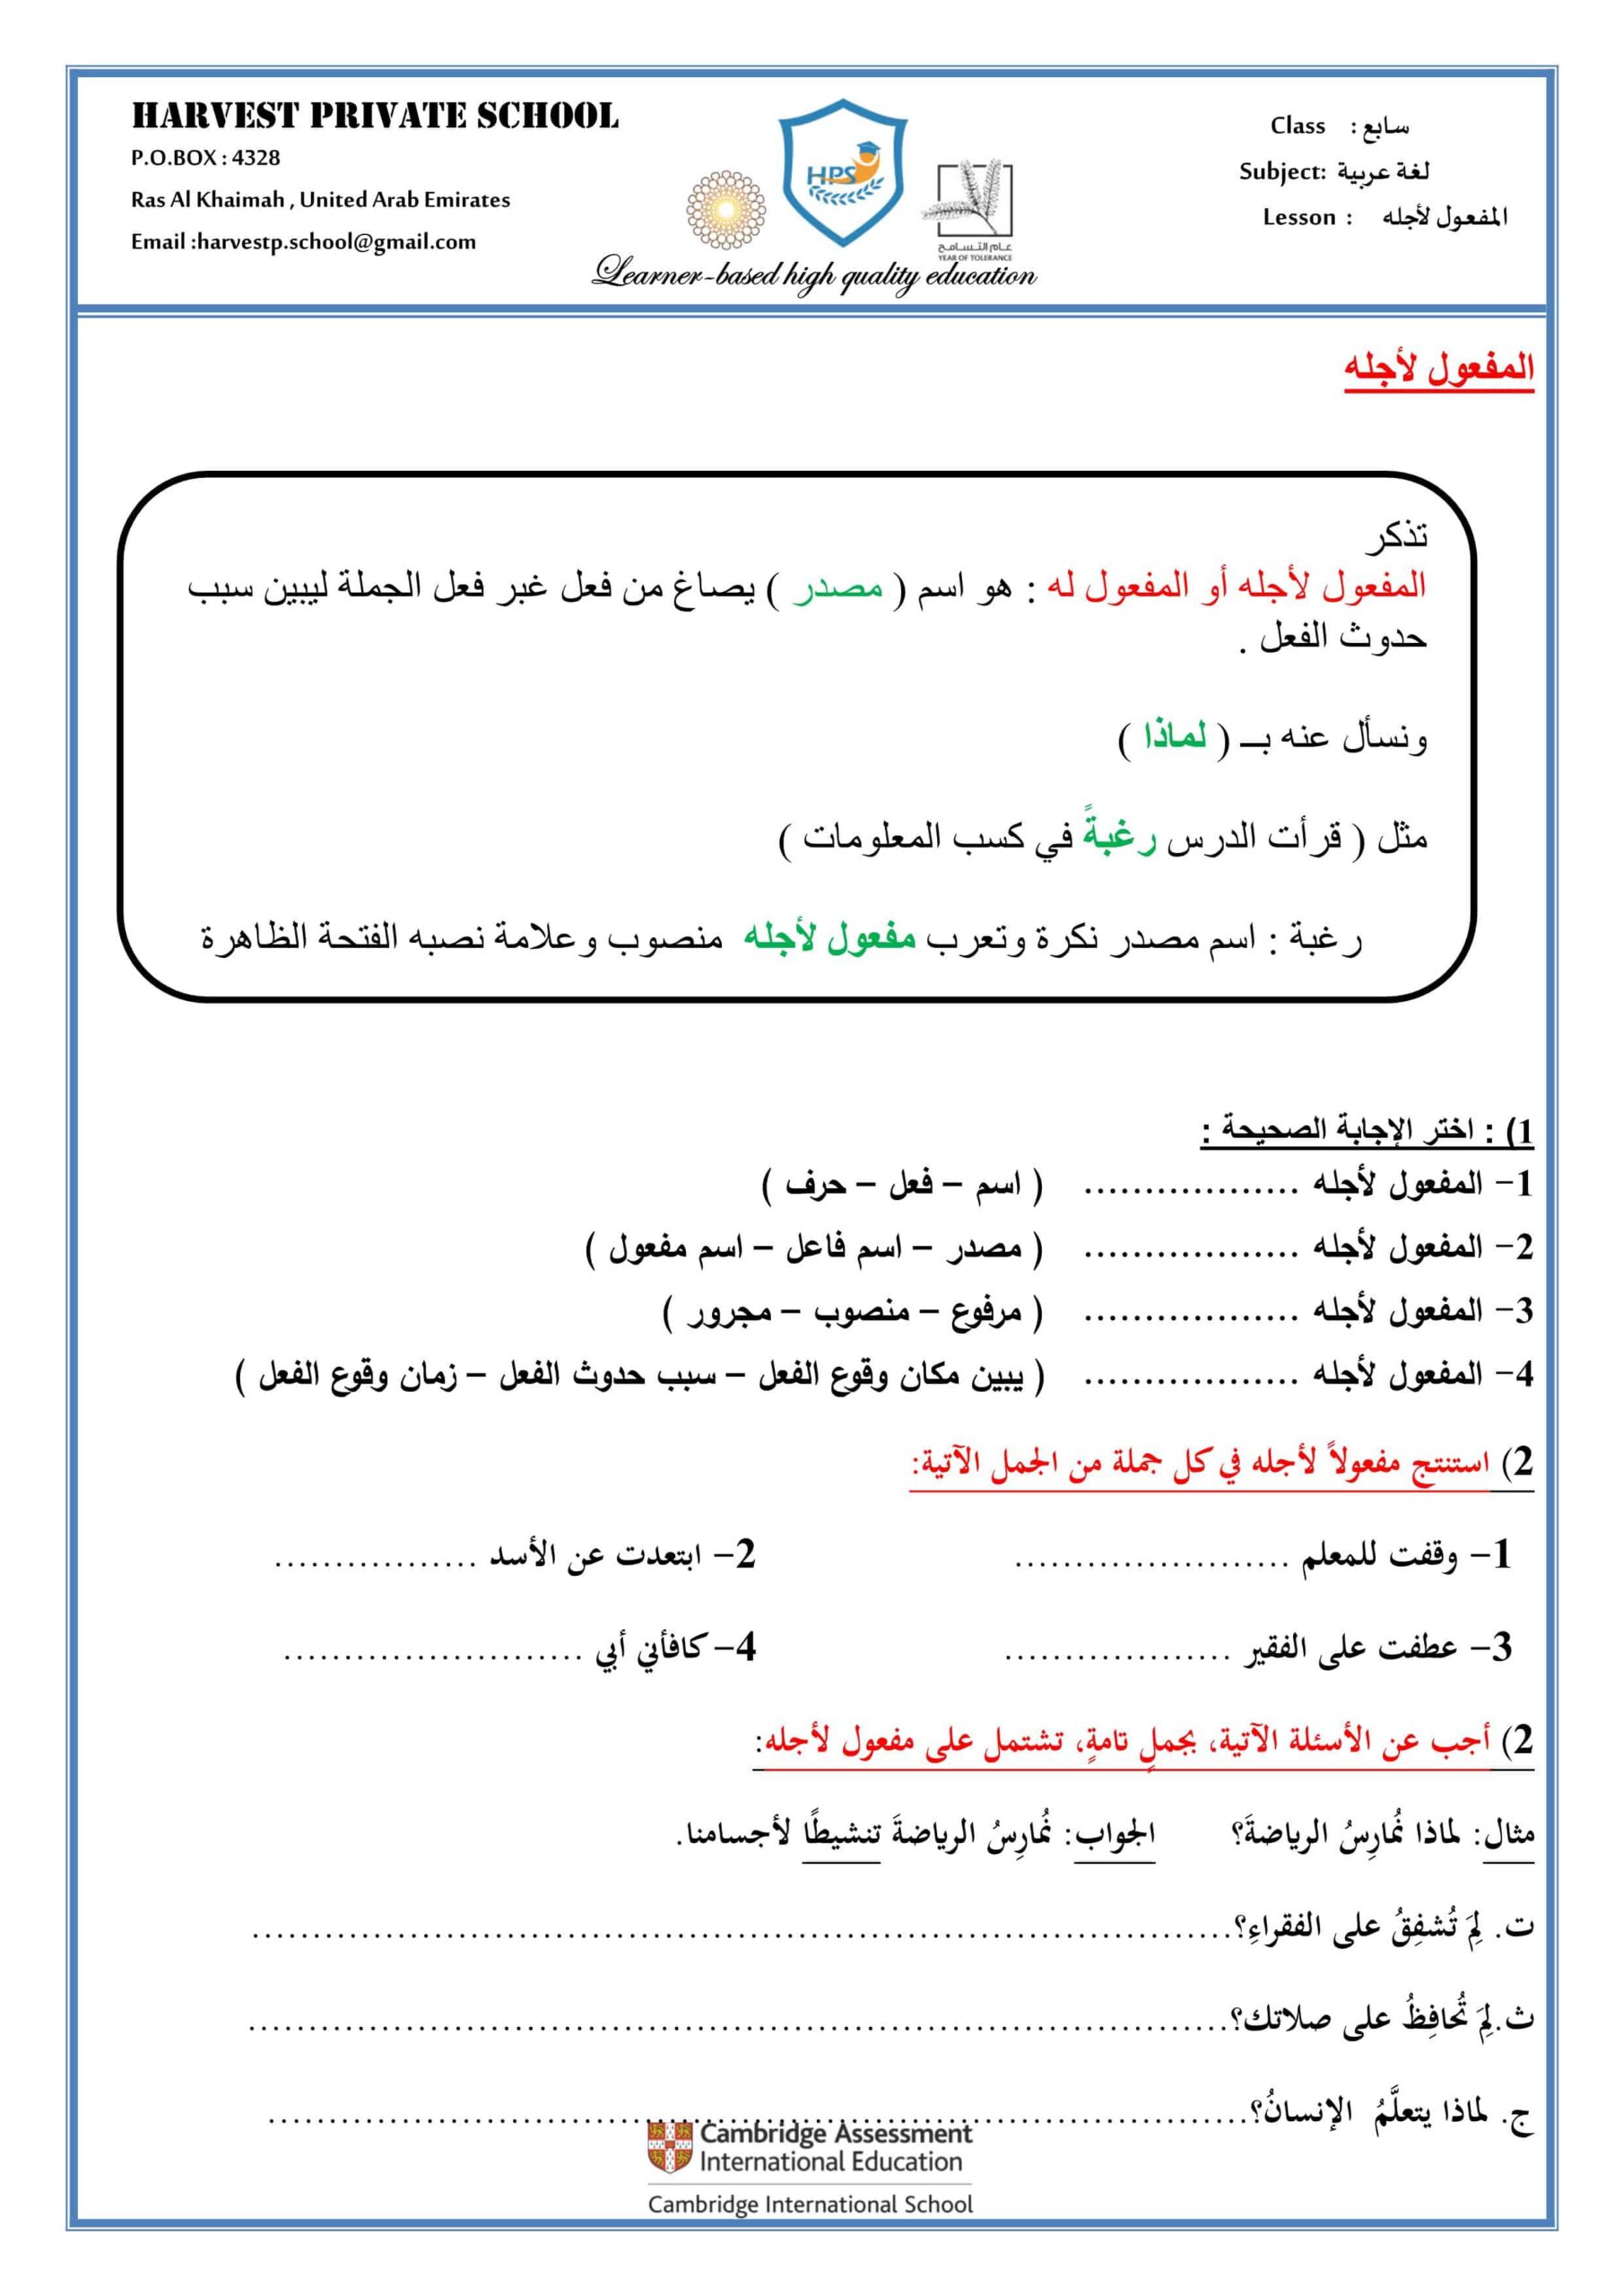 حل أوراق عمل المفعول لأجله اللغة العربية الصف السابع